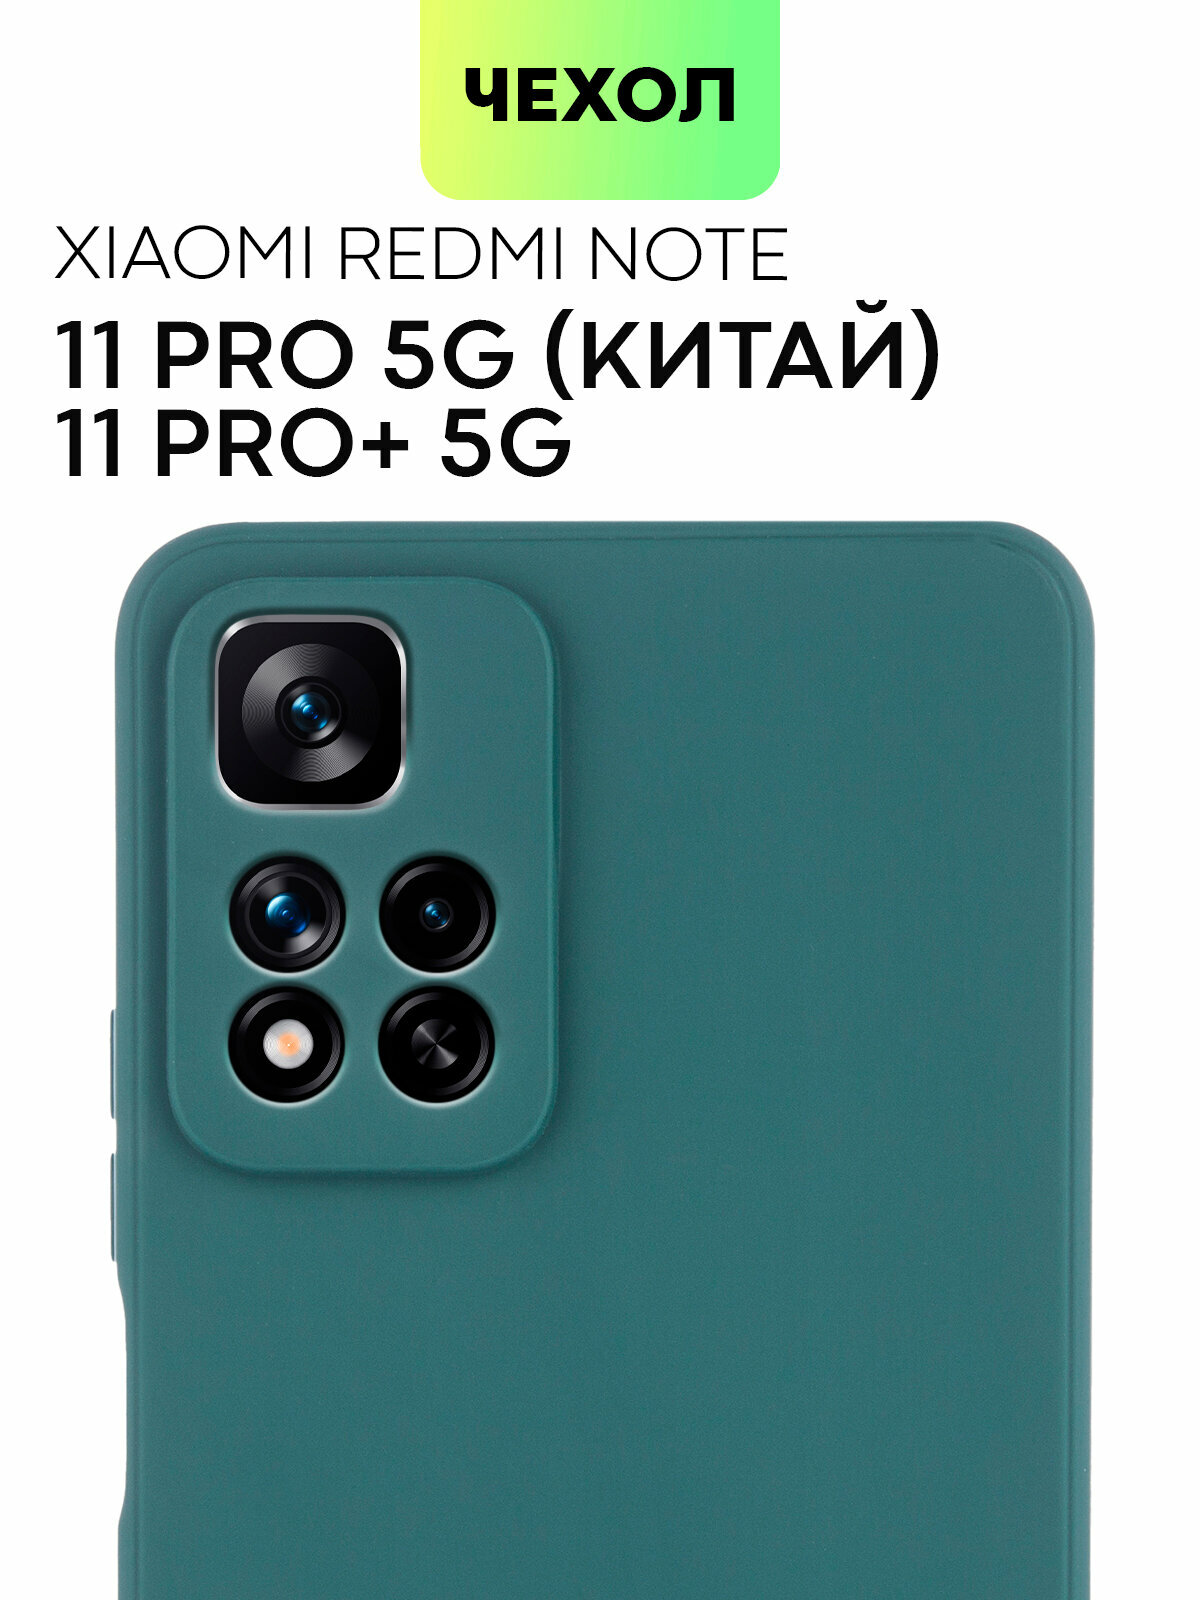 Чехол для Xiaomi Redmi Note 11 Pro 5G, Note Pro+ (Редми Ноут 11 Про, Про+), тонкий, силиконовый чехол, матовое покрытие, защита камер, темно-зеленый